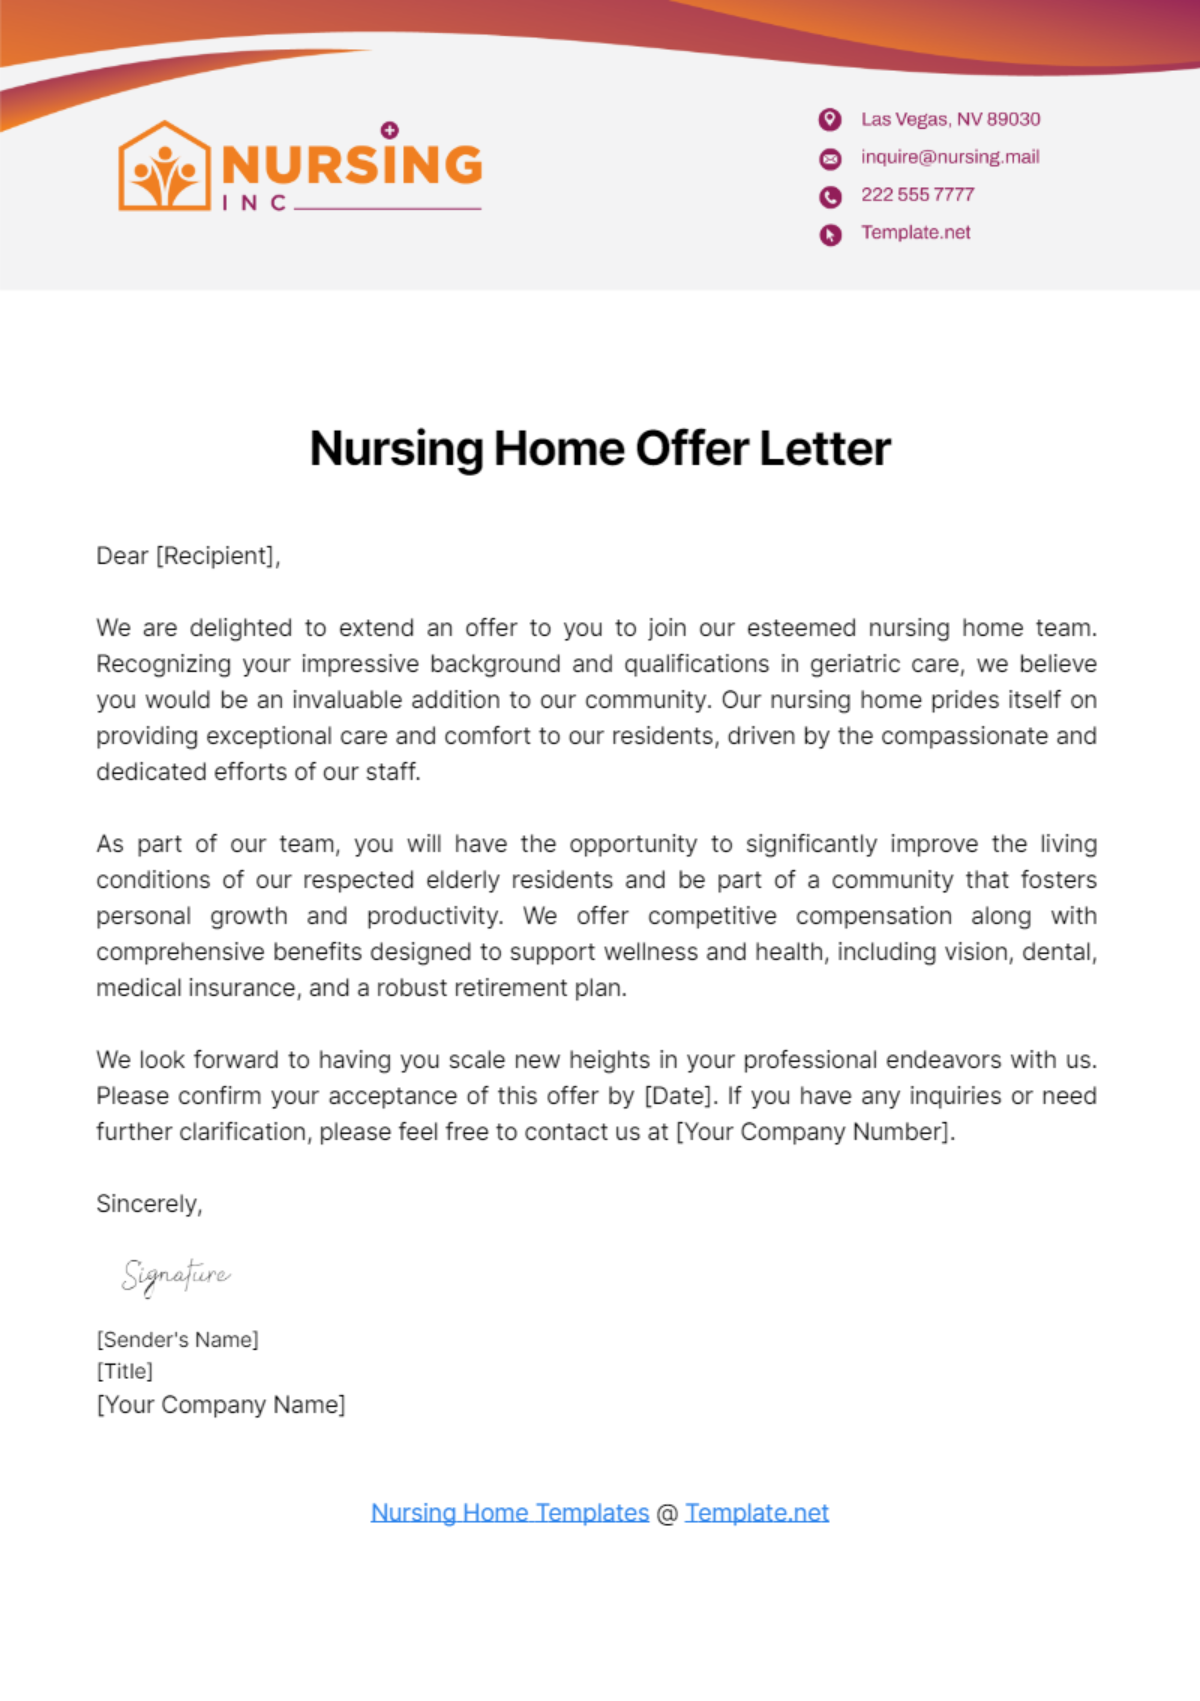 Nursing Home Offer Letter Template